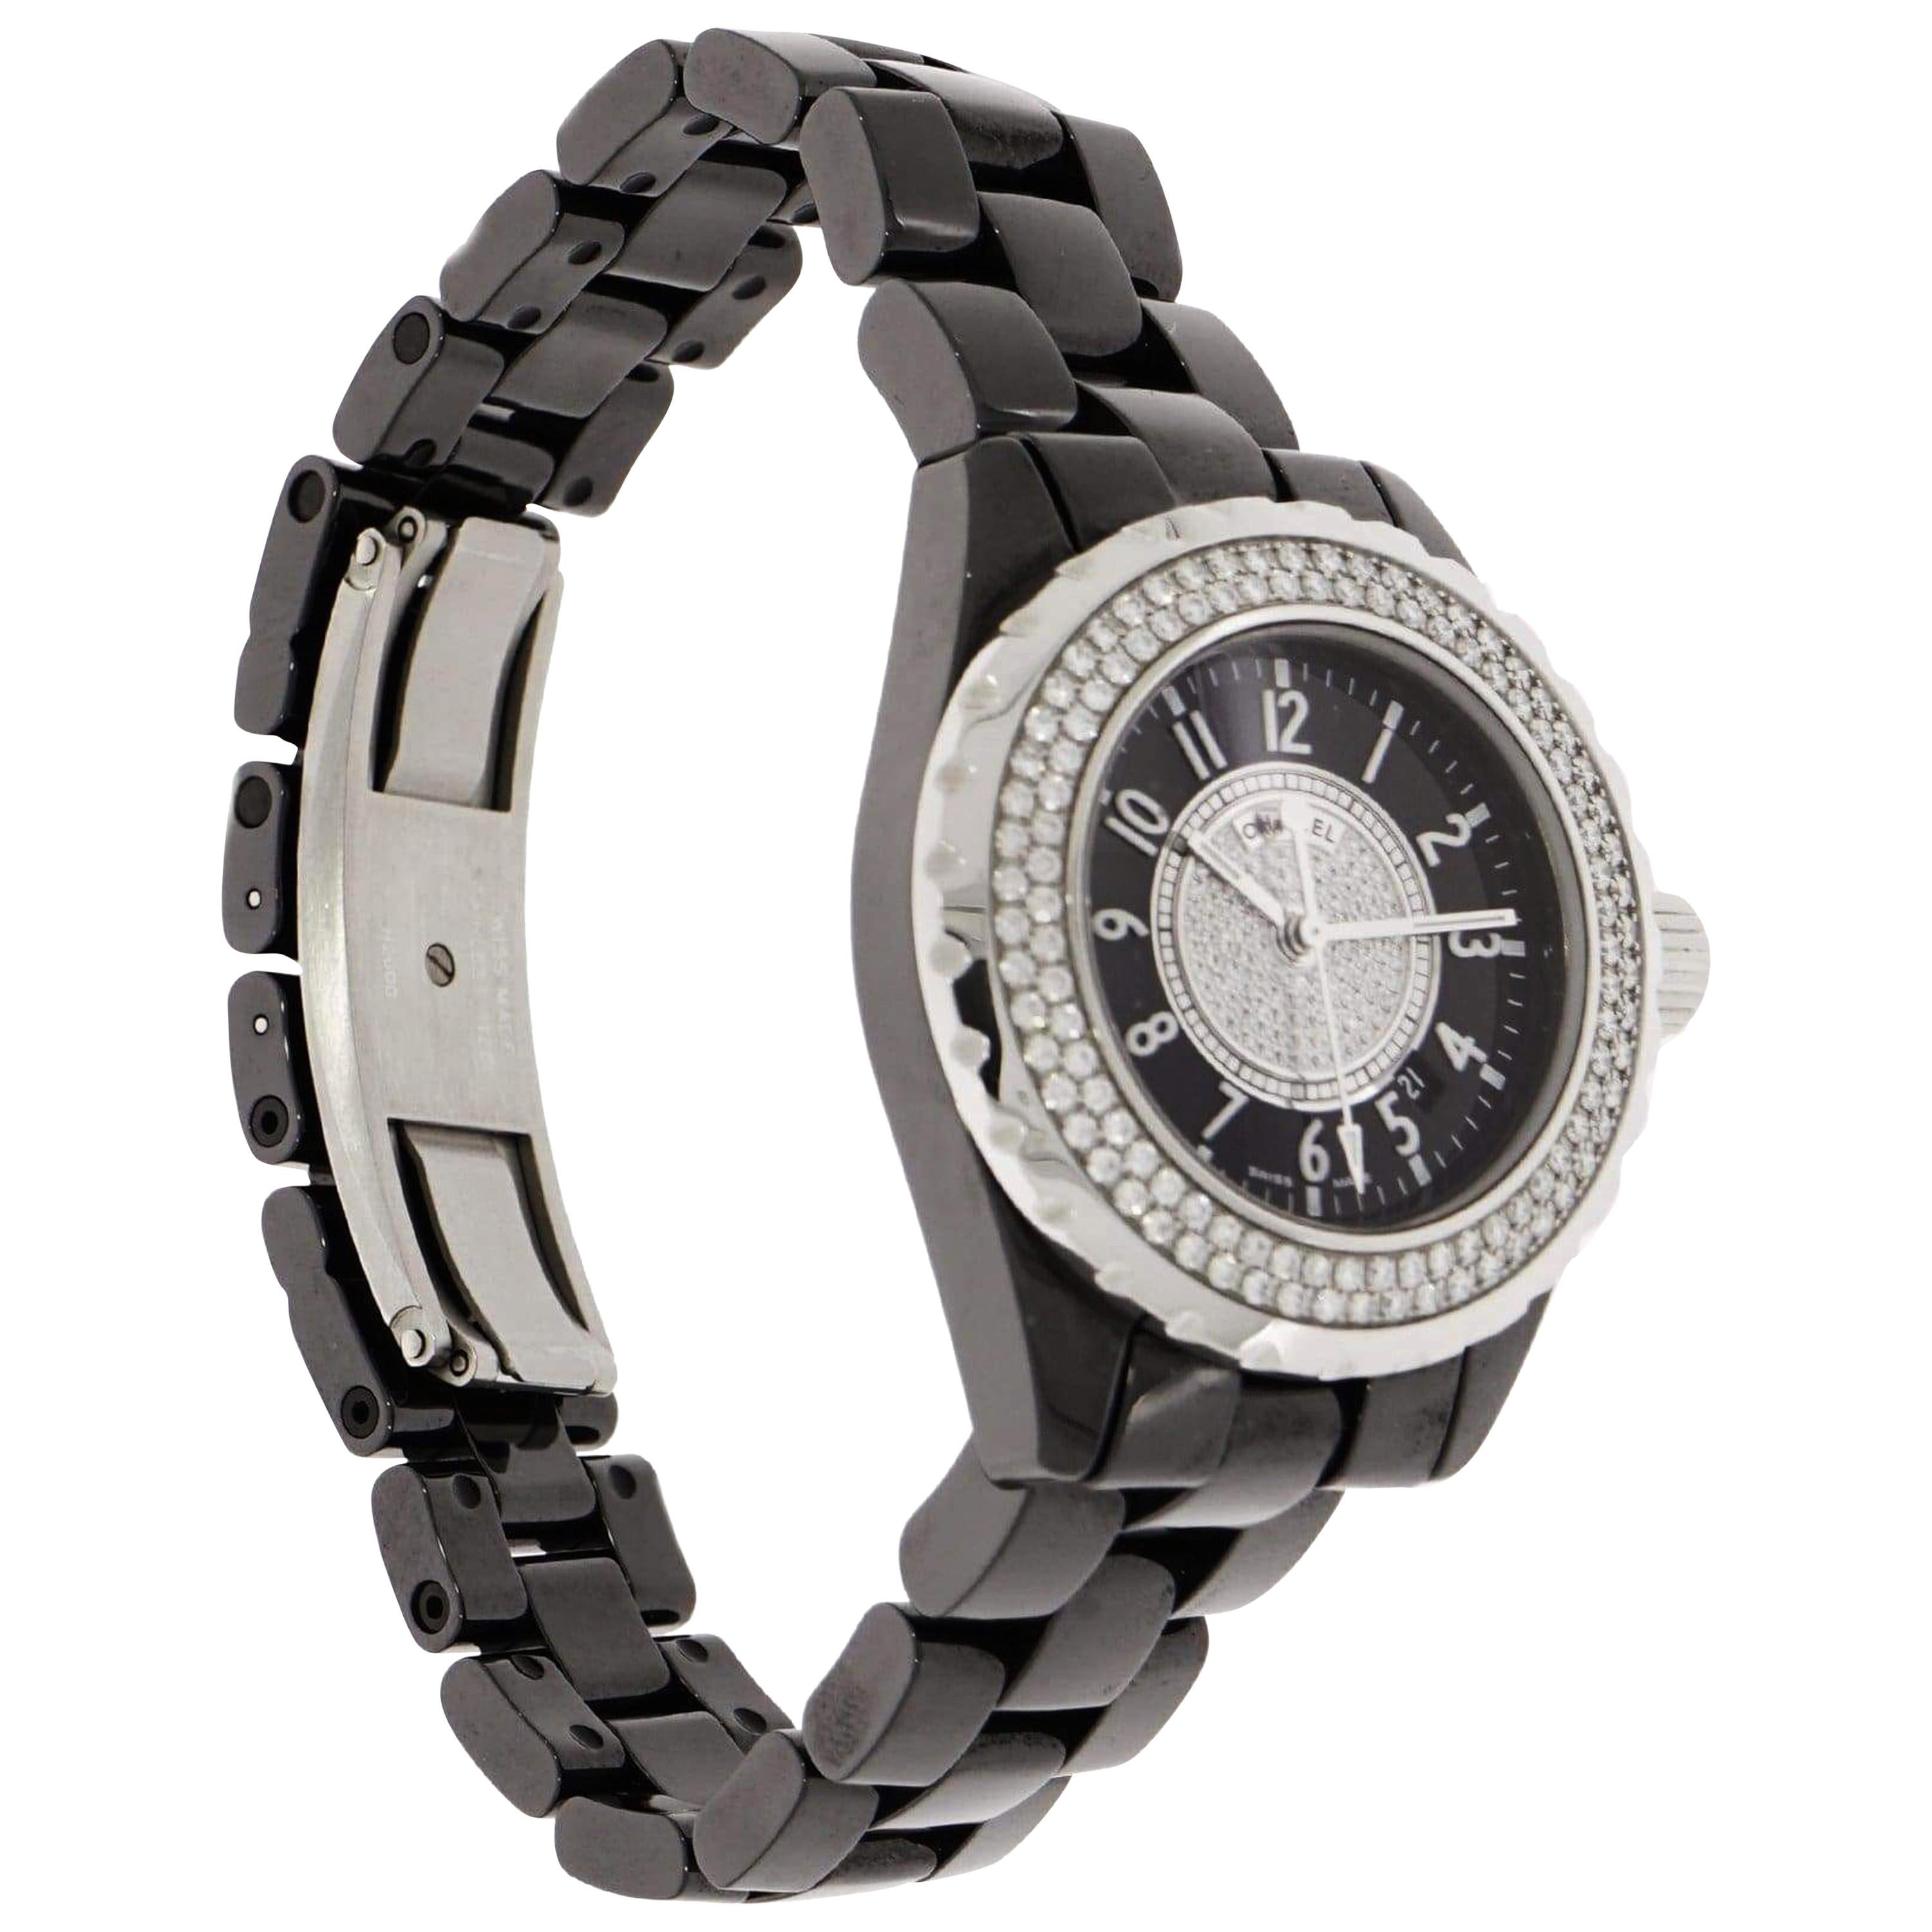 
La montre Chanel J12 (réf. H1708) est dotée d'un mouvement à quartz de fabrication suisse, d'un cadran en laque noire avec centre pavé de diamants serti de 108 diamants taille ronde et de 12 indicateurs en diamant taille unique, d'un affichage de